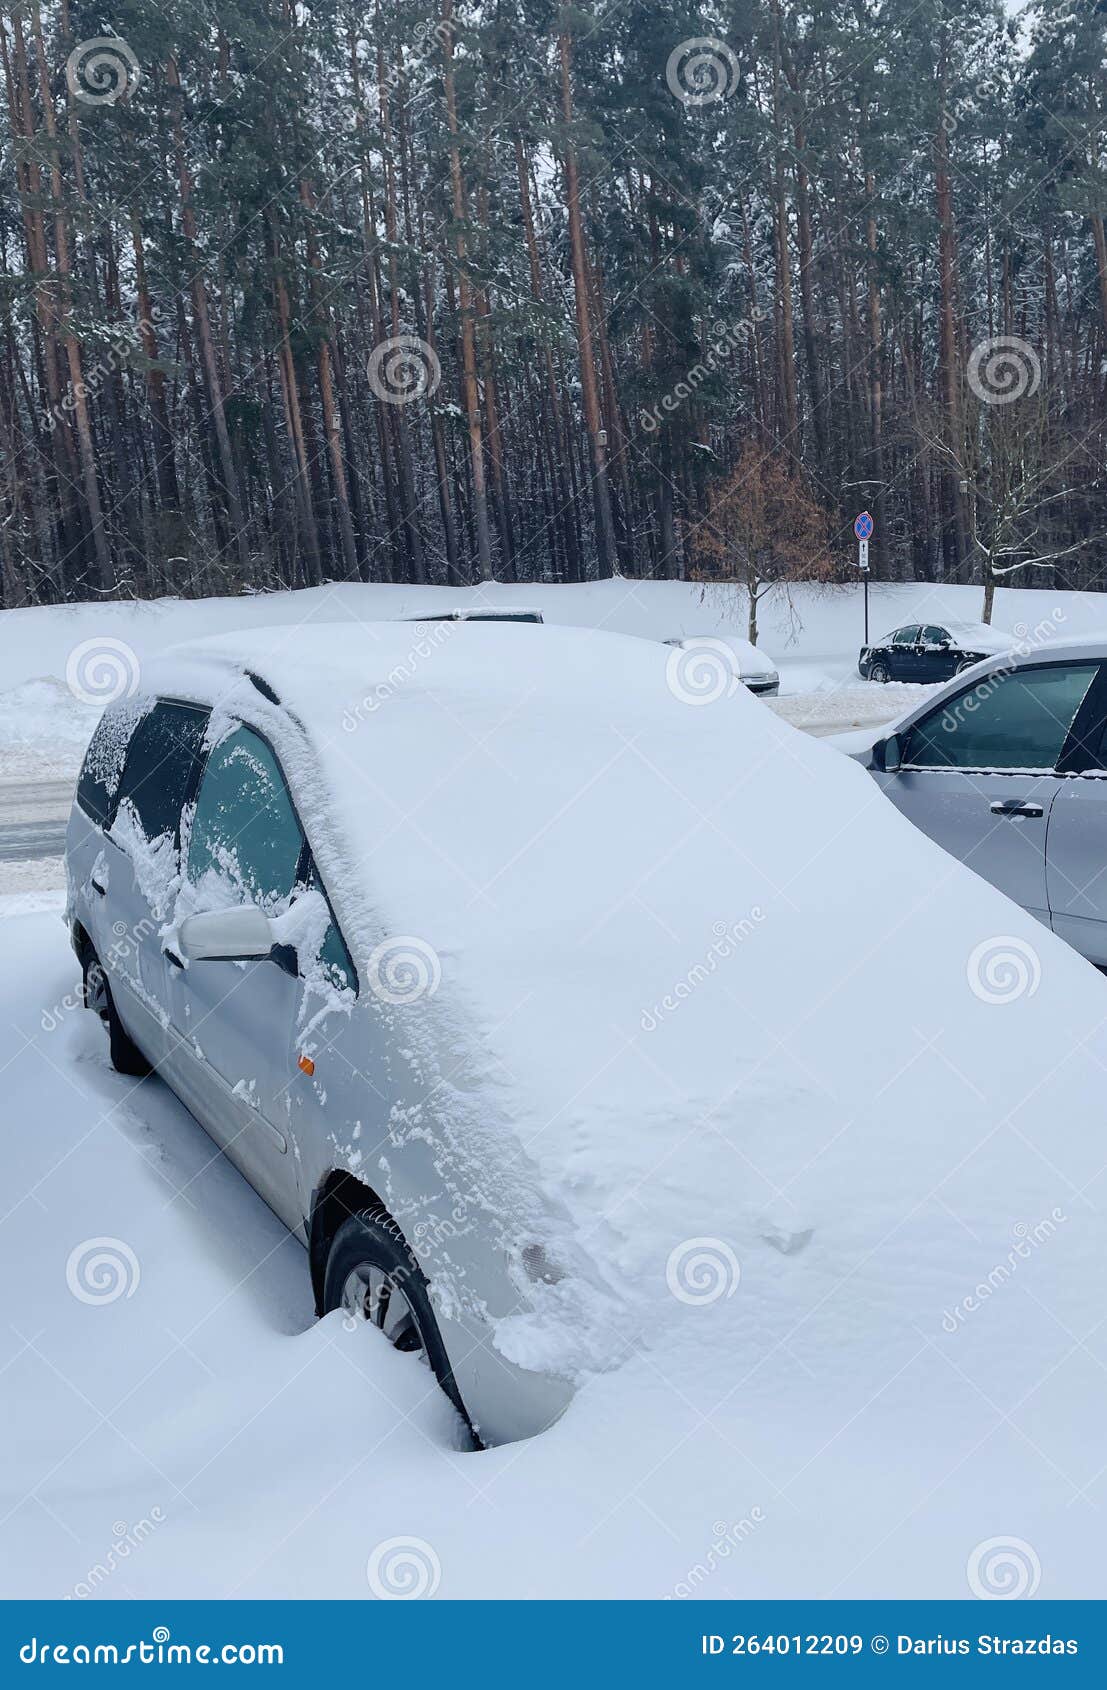 https://thumbs.dreamstime.com/z/voiture-sous-la-neige-lourde-en-europe-voitures-enterr%C3%A9es-saison-hivernale-profonde-264012209.jpg